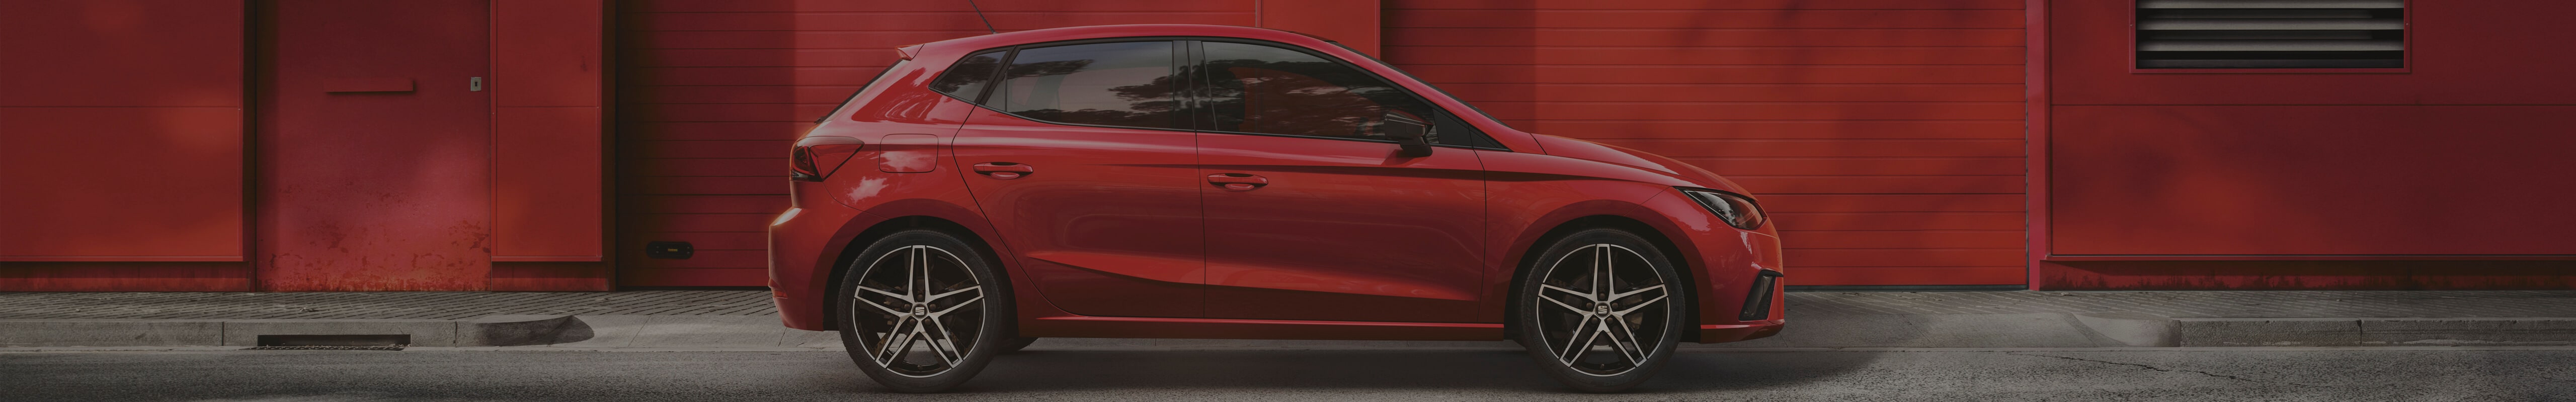 SEAT Ibiza vermelho lateral